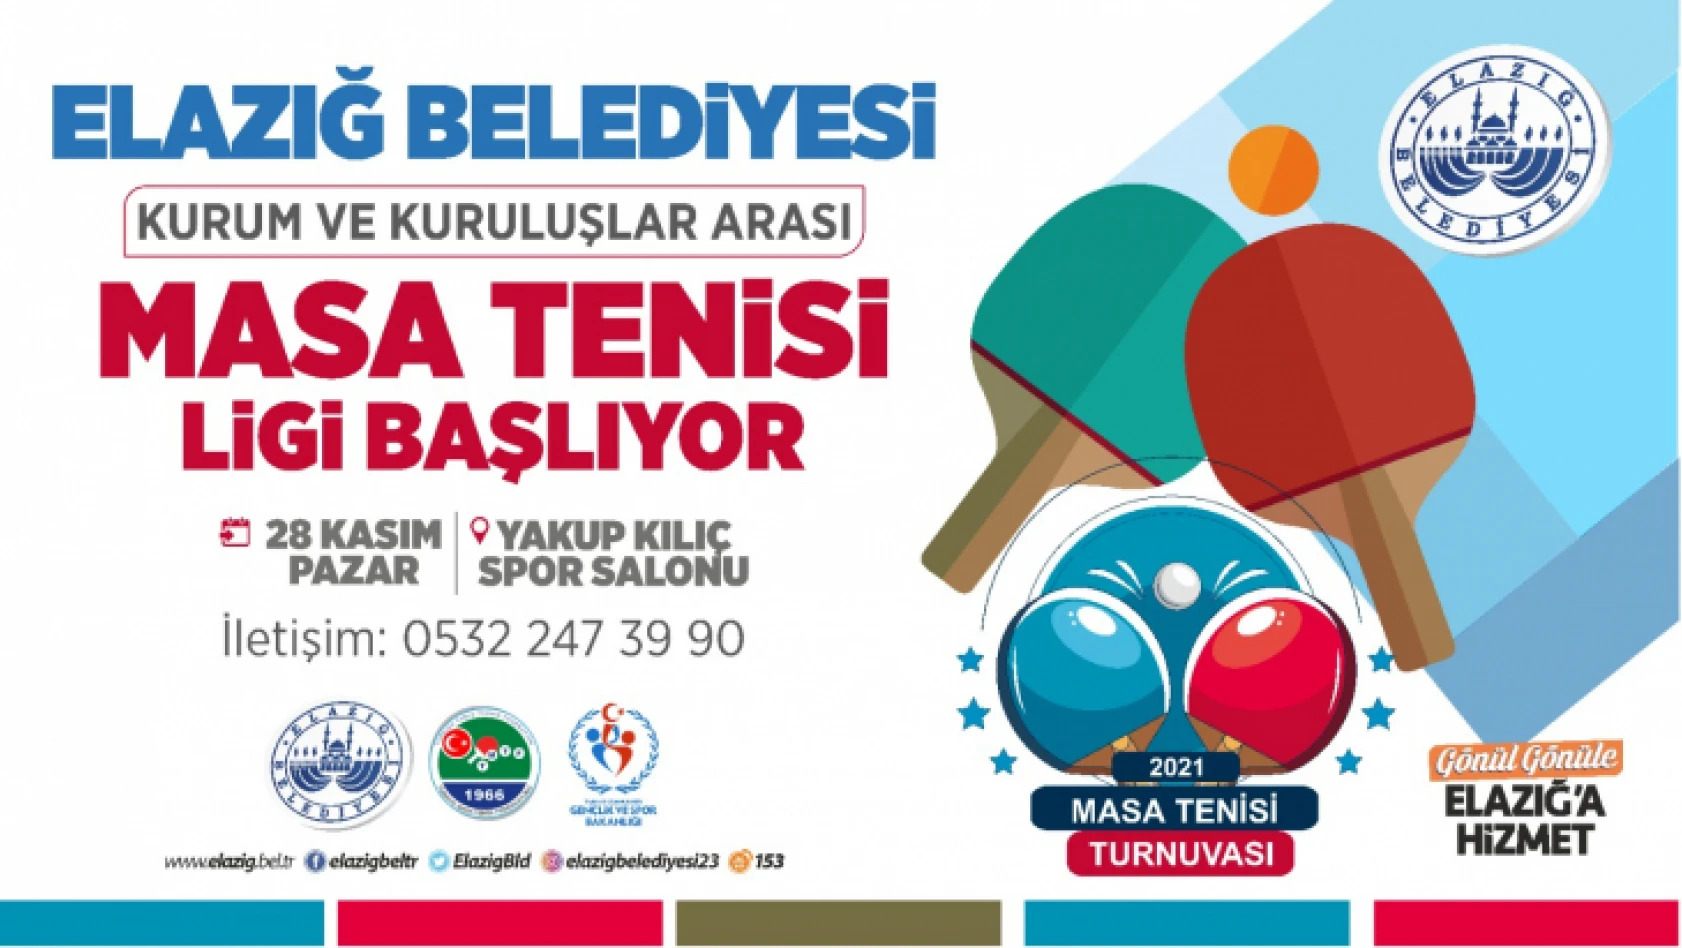 Elazığ Belediyesi, Kurum ve Kuruluşlar Arası Masa Tenisi Turnuvası Düzenleyecek